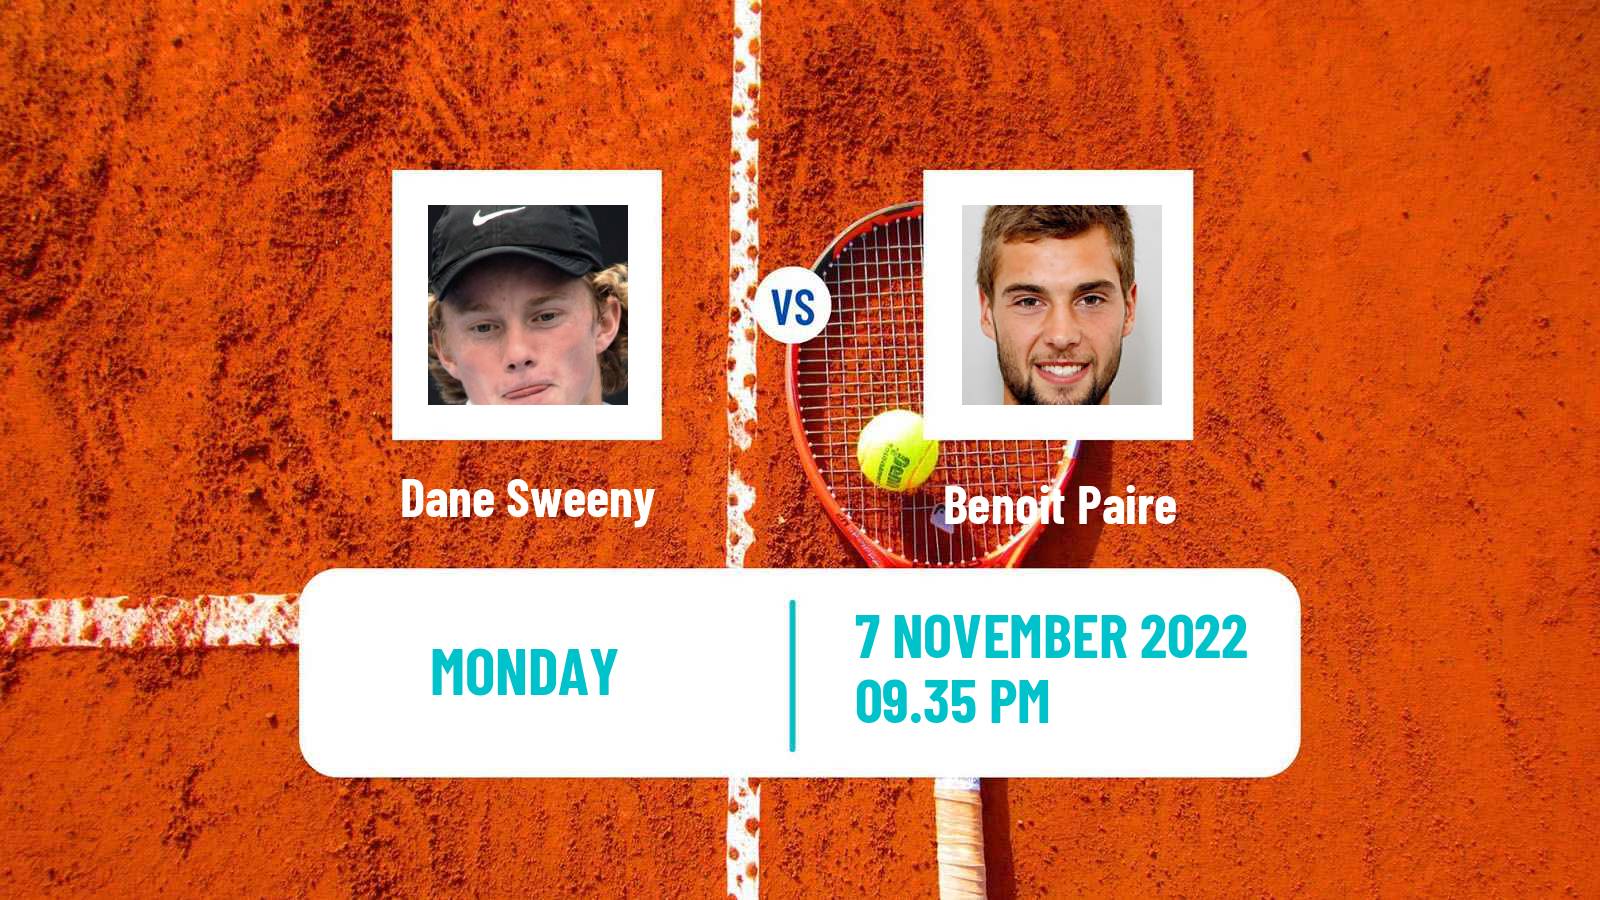 Tennis ATP Challenger Dane Sweeny - Benoit Paire